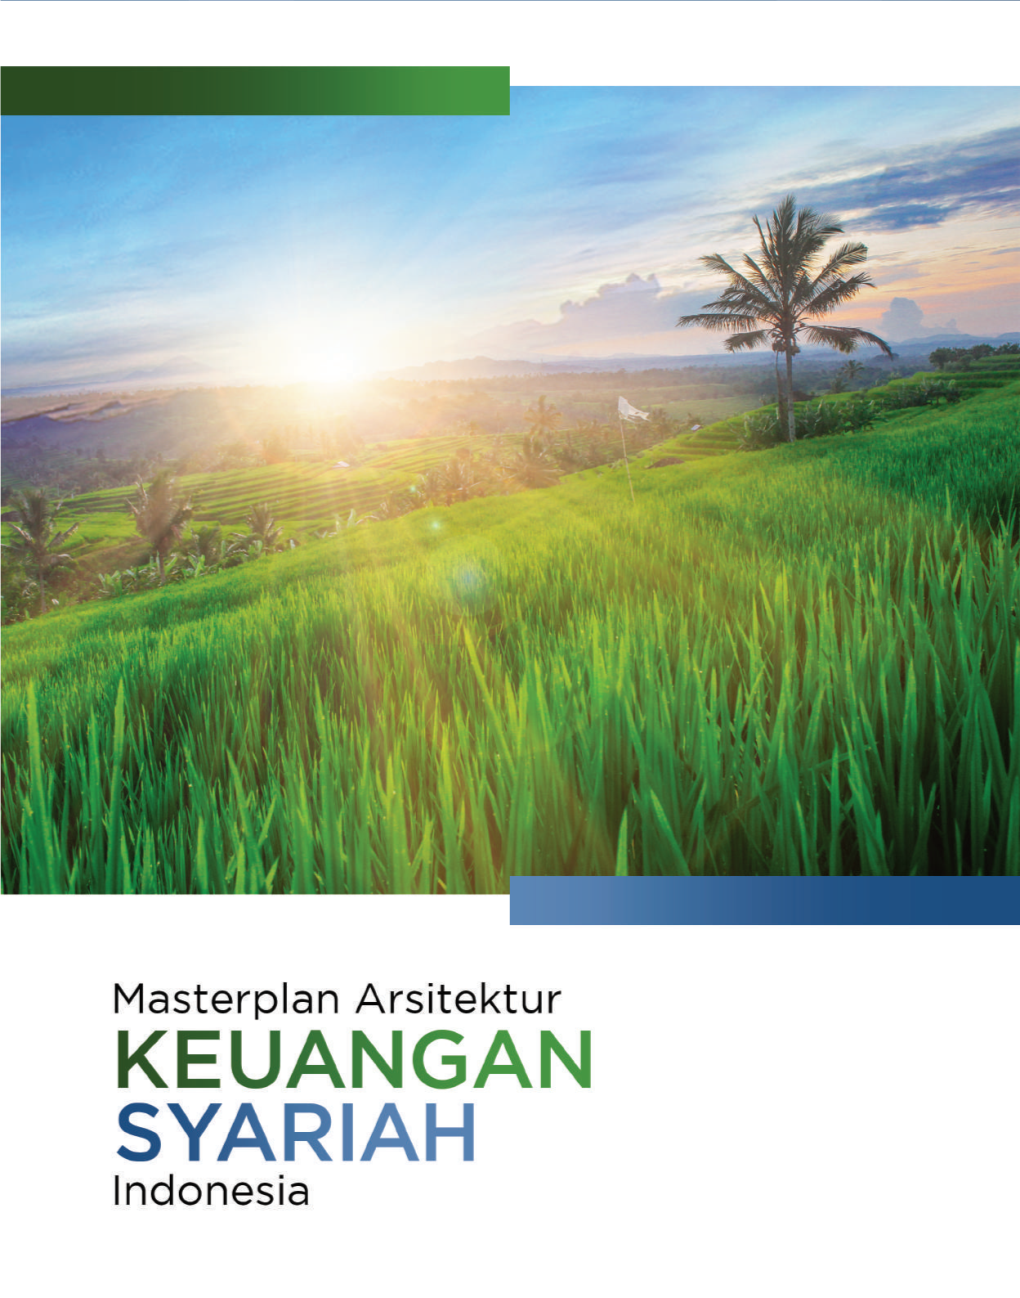 Masterplan Arsitektur Keuangan Syariah Indonesia Masterplan Arsitektur KEUANGAN SYARIAH Indonesia